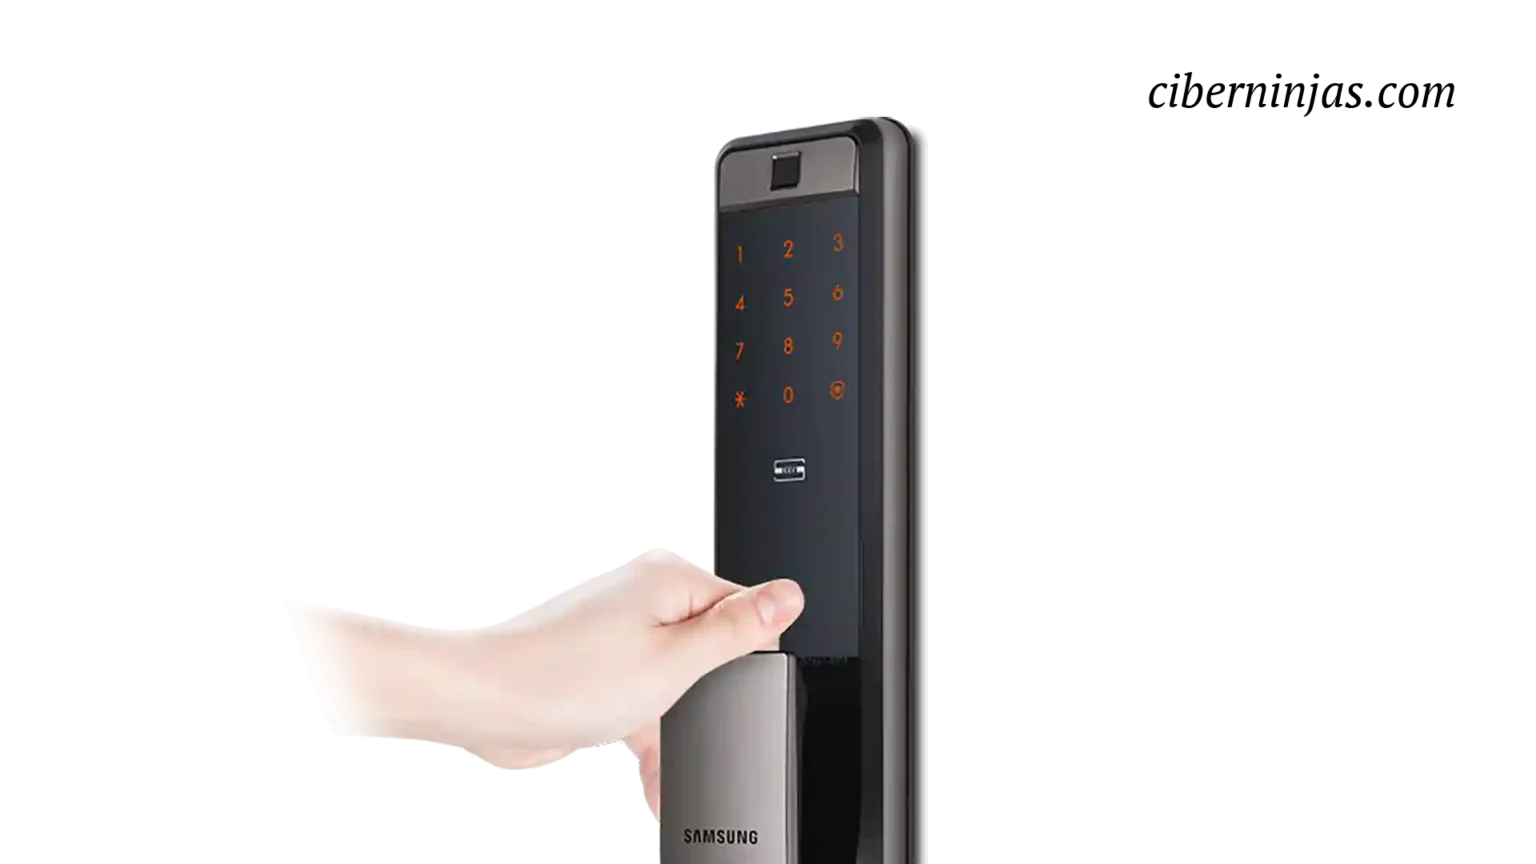 Lazan la primera cerradura inteligente del mundo compatible con teléfonos inteligentes Samsung